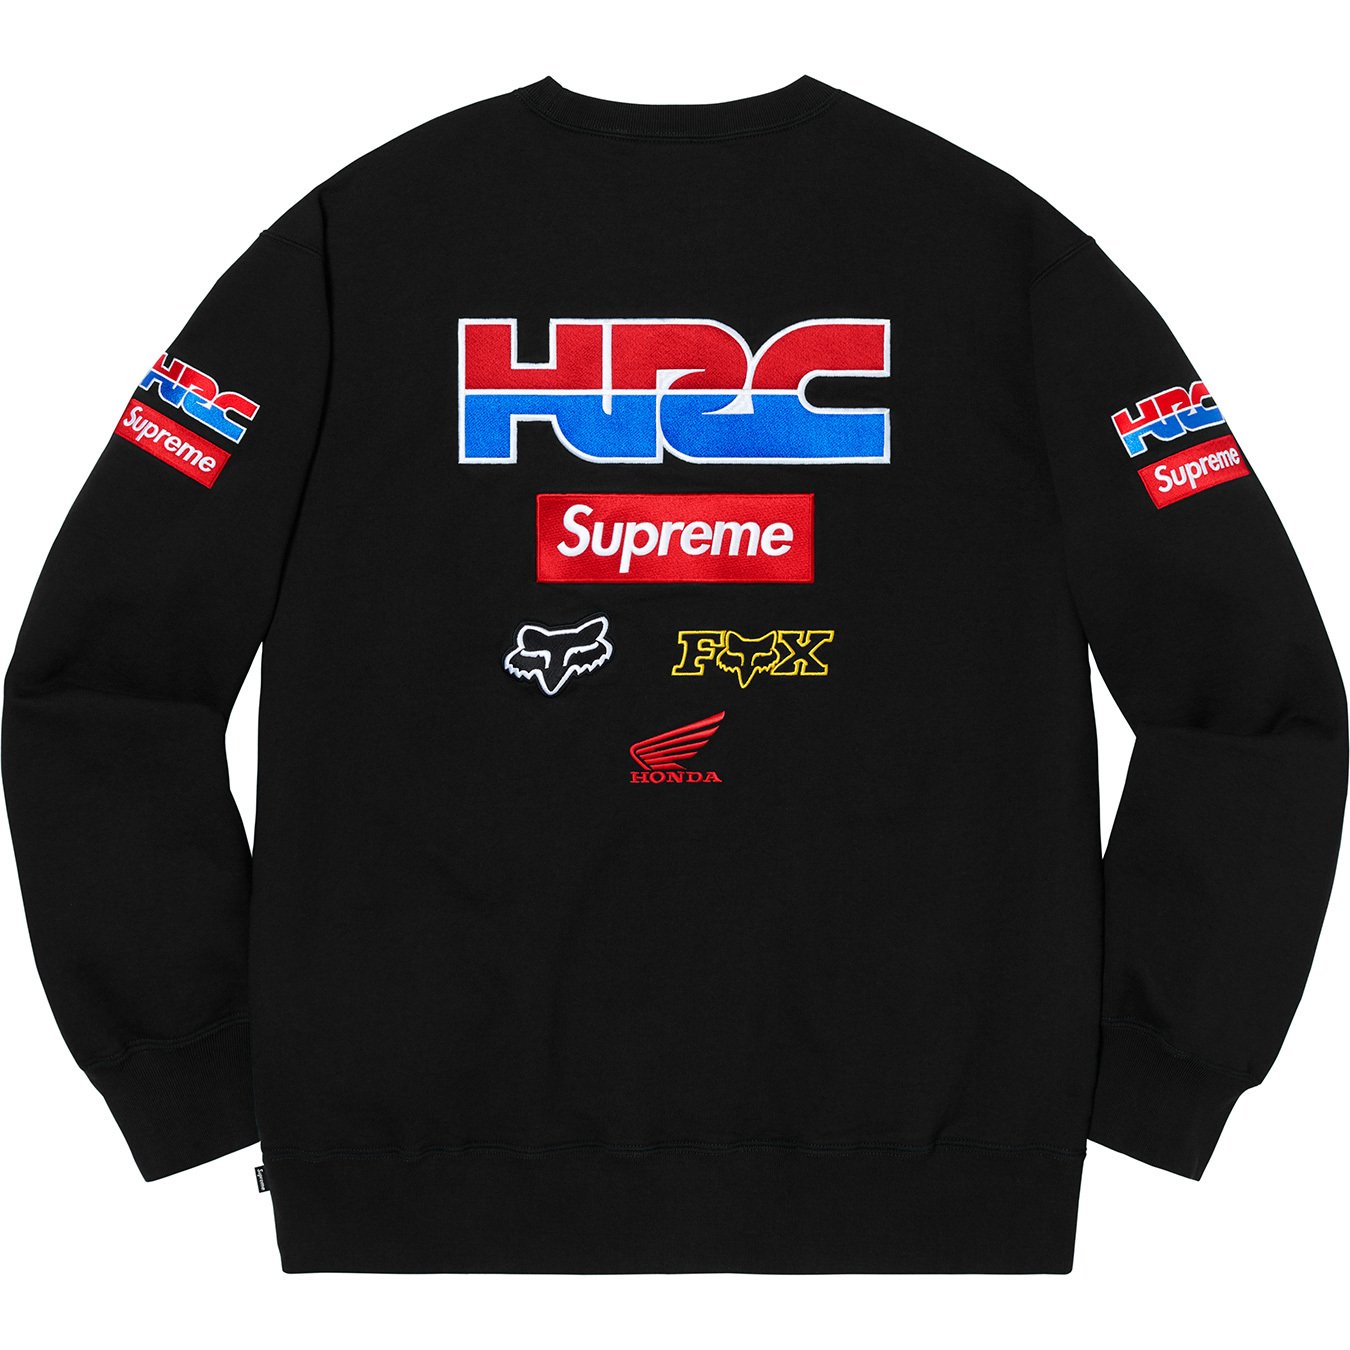 Supreme/Honda/Fox Racing Crewneck【L】